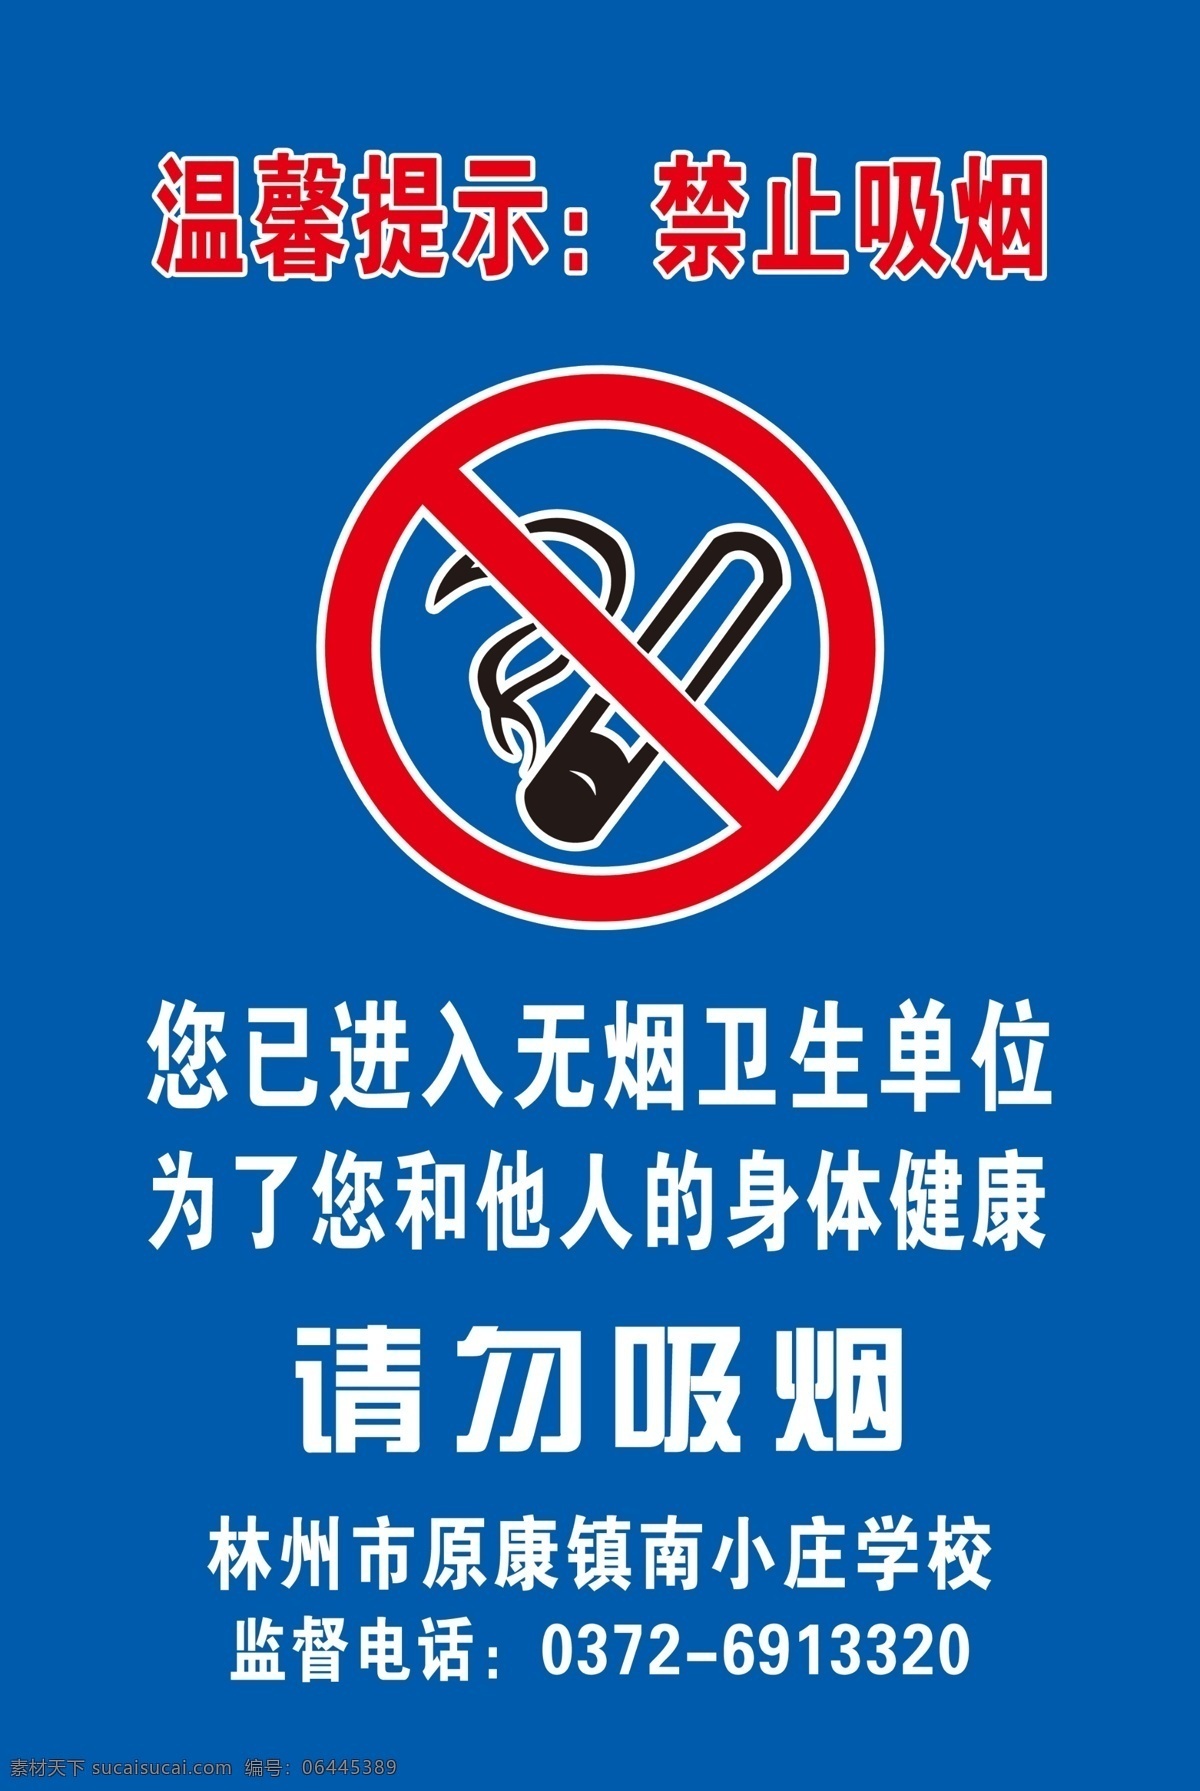 请勿吸烟 禁烟 学校 小学禁烟 无烟校园 南 xiao 庄 校 室外广告设计